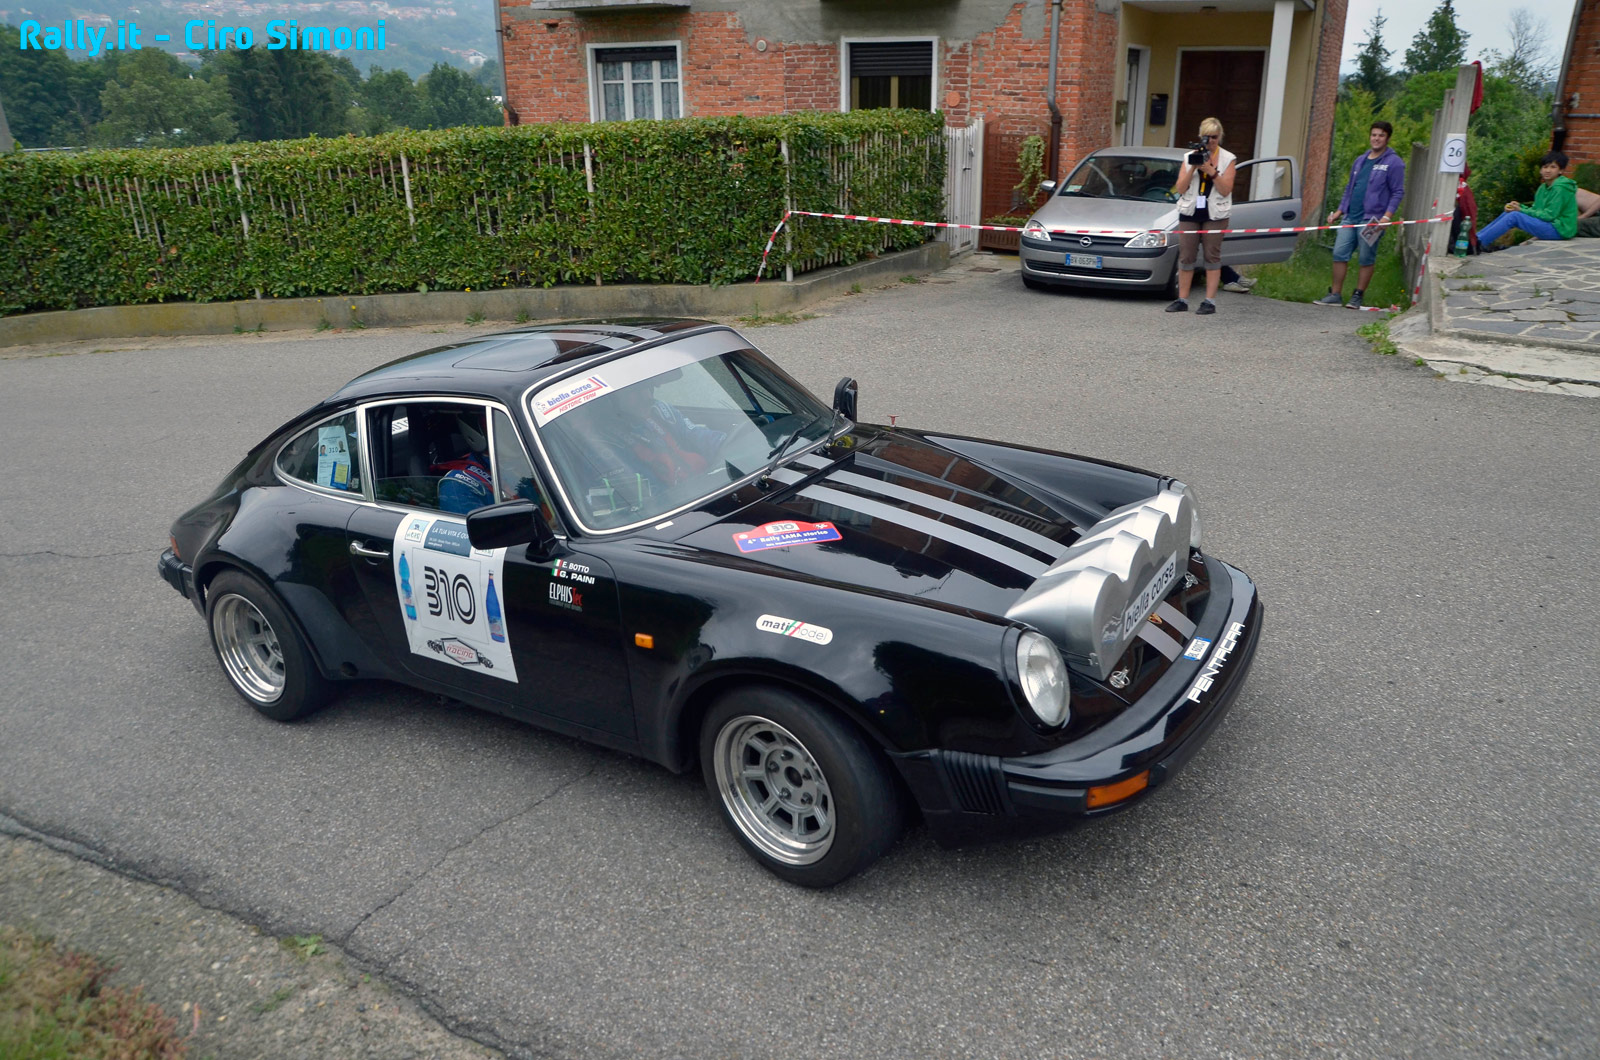 006-rally lana storico-simoni-2014-Rally_it.jpg